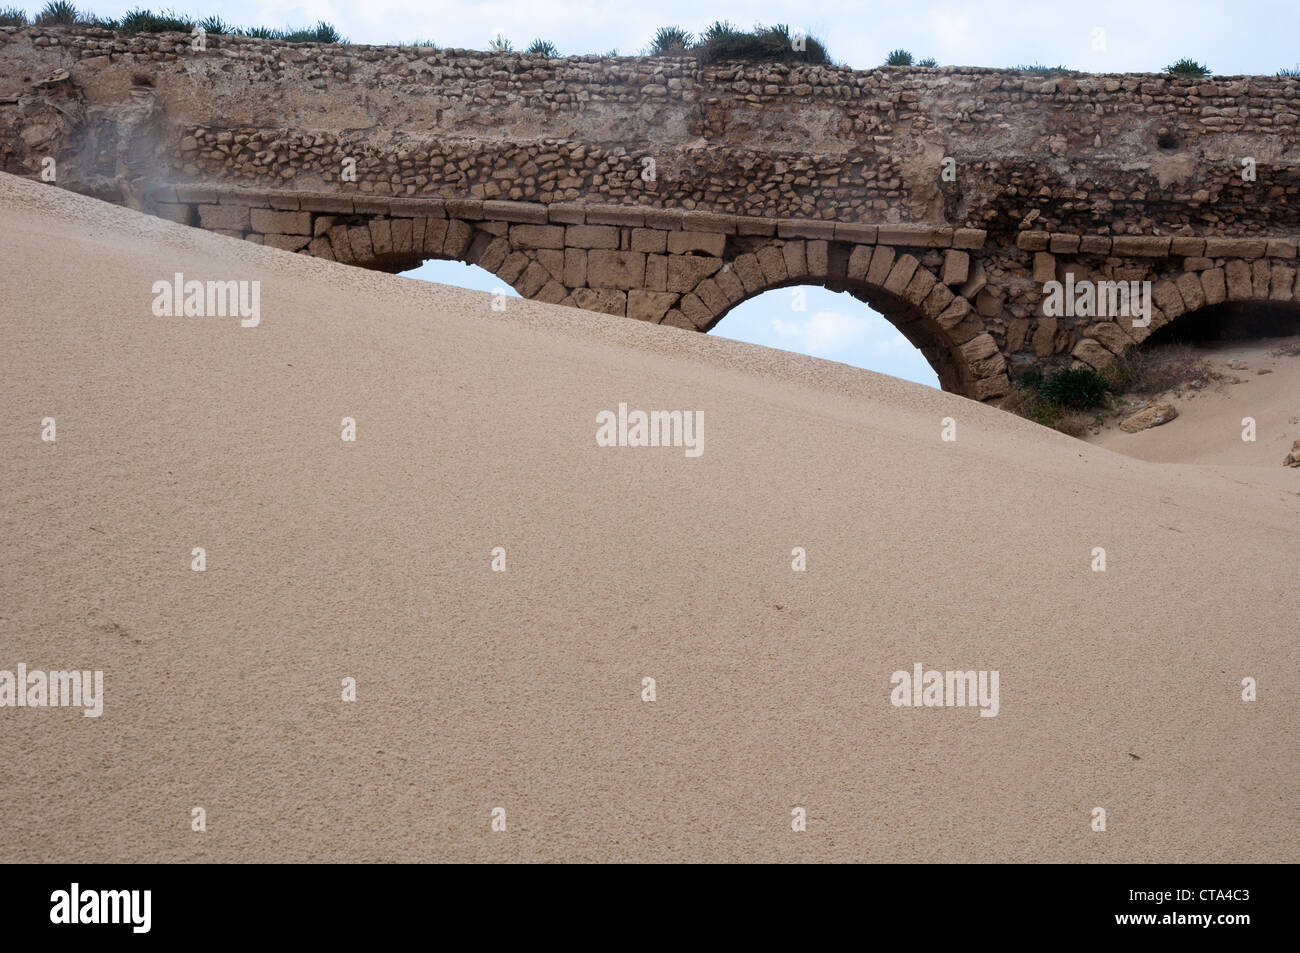 Israël, les plaines côtières, au nord de Césarée, vestiges de l'Aqueduc Romain Banque D'Images